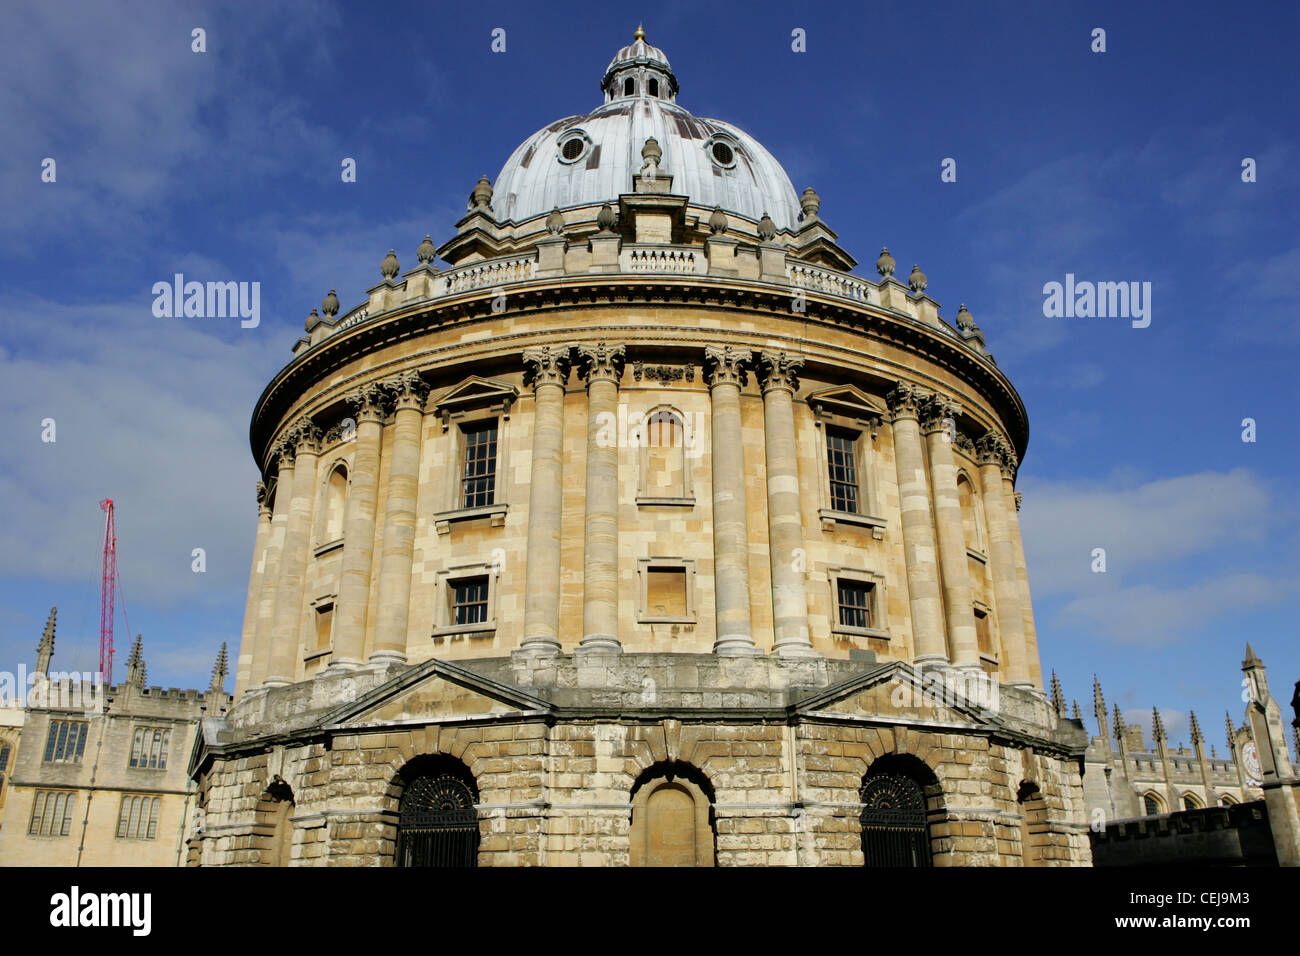 La Radcliffe Camera, construit 1737-1749 en tant que bibliothèque scientifique d'Oxford, détient maintenant des livres de l'anglais, l'histoire, et Theolog Banque D'Images